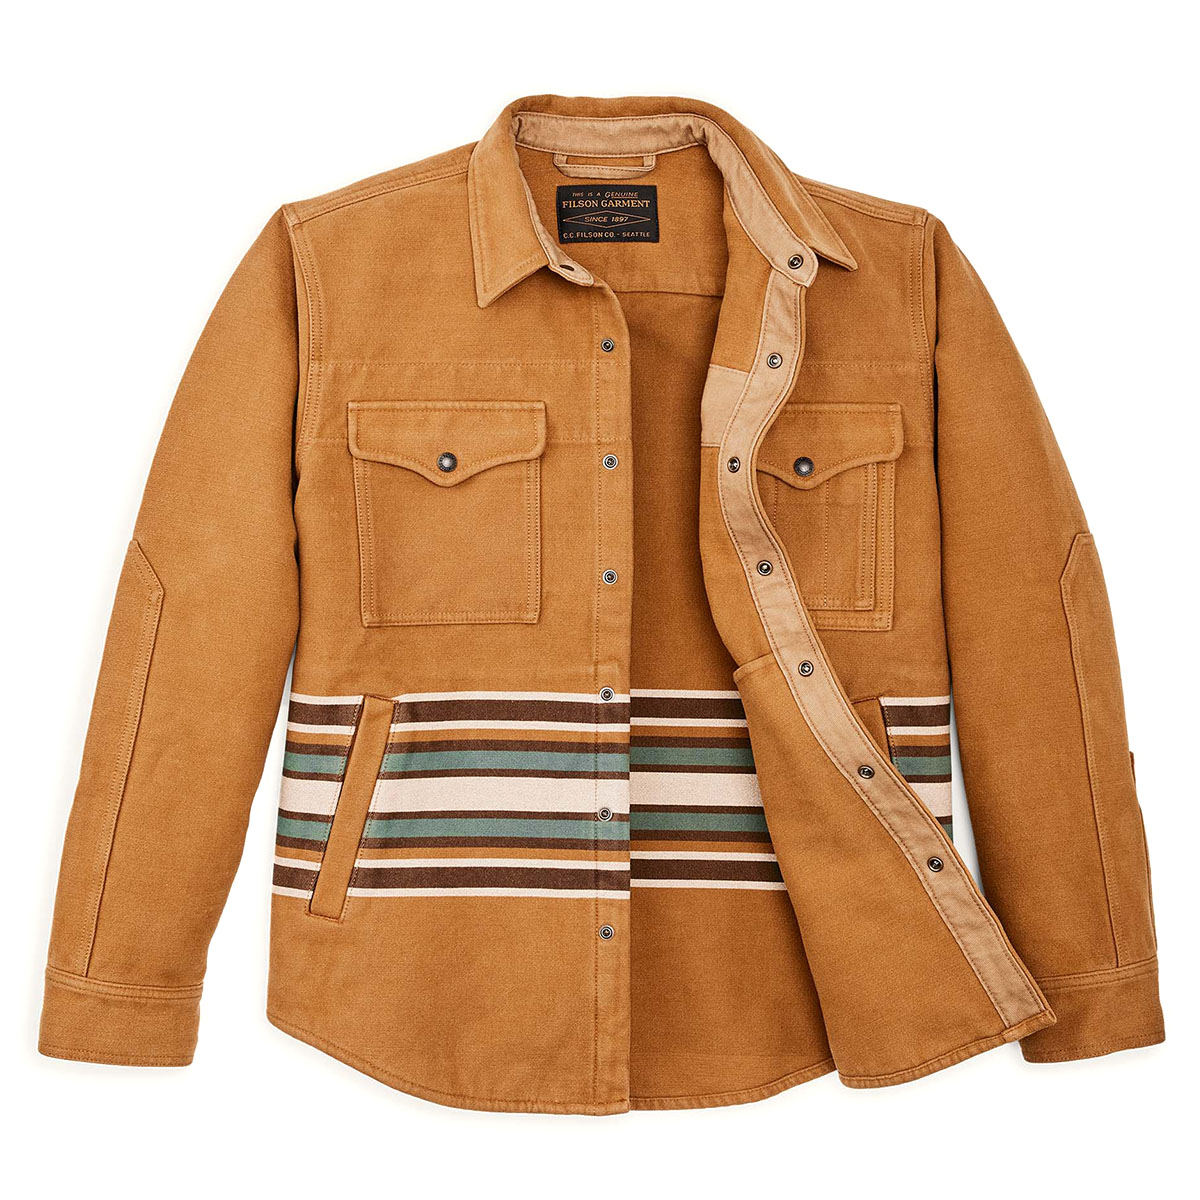 Filson Beartooth Jac-Shirt Golden Brown Multi Stripe, ein warmes und bequemes 3-Jahreszeiten-Überhemd